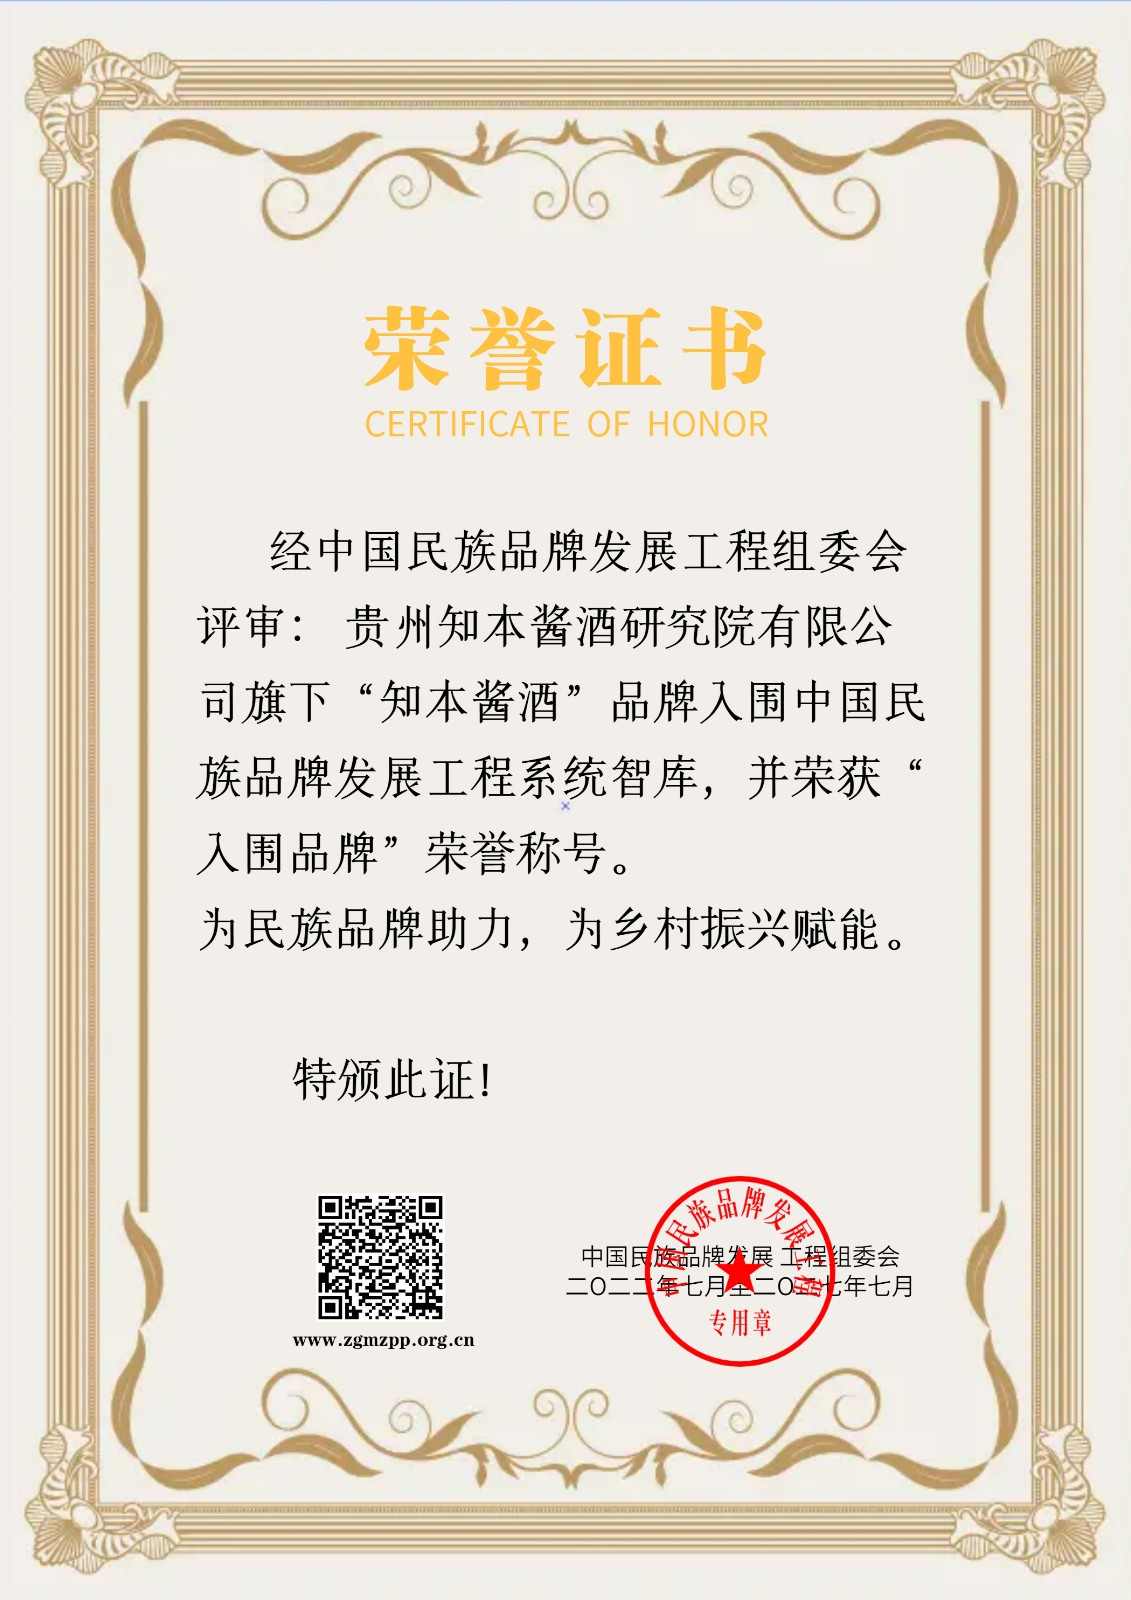 贵州知本酱酒研究院有限公司证书标准版 (3).jpeg